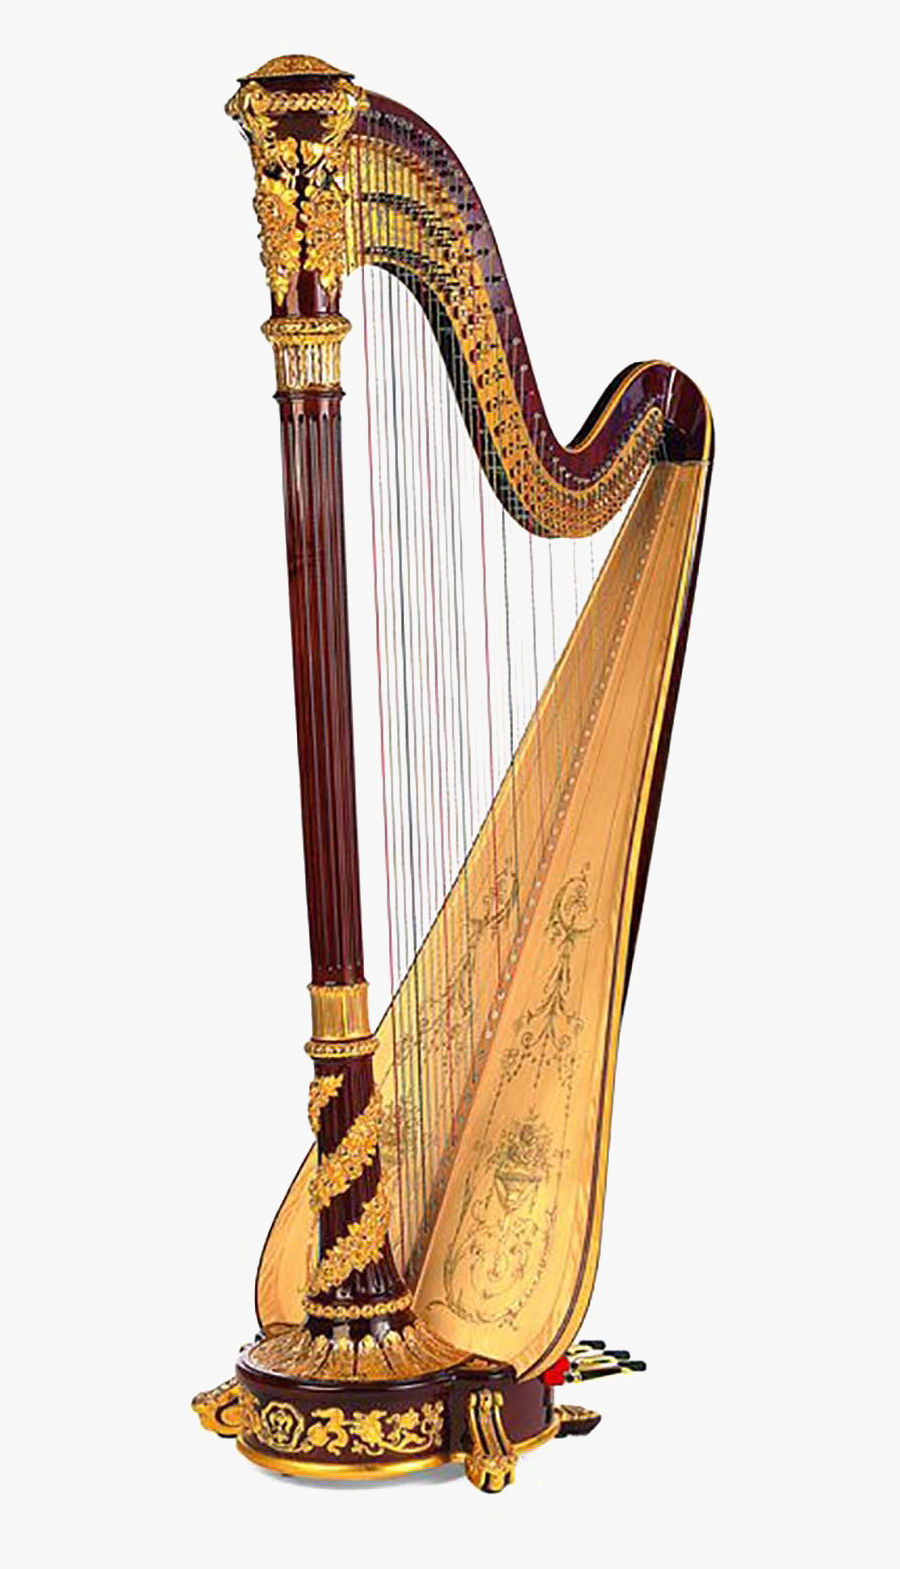 Prince William Harp, Transparent Clipart